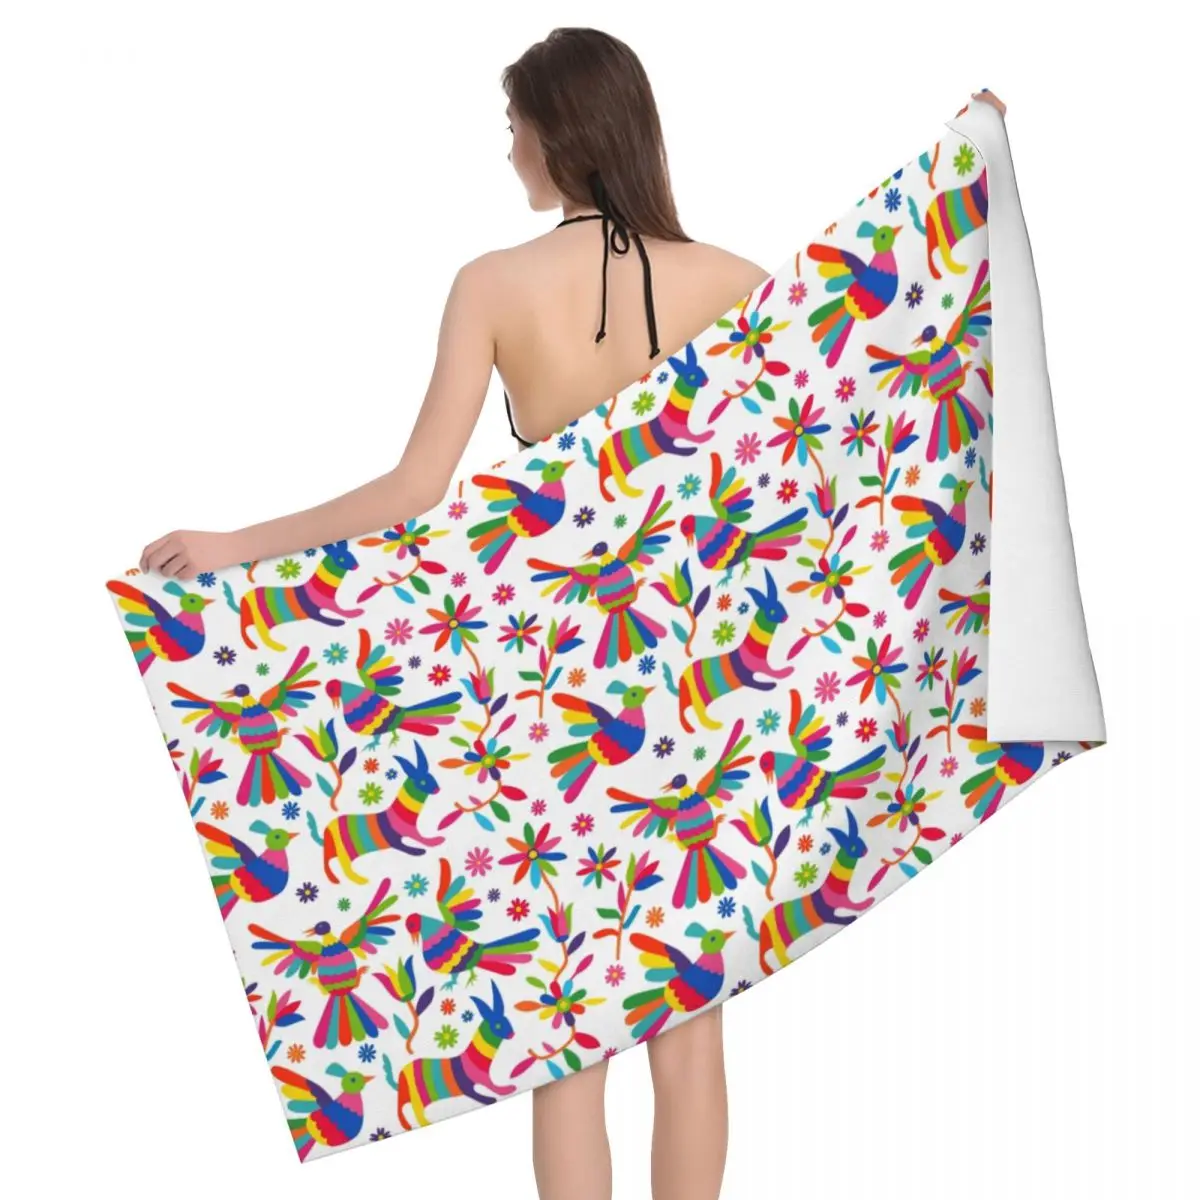 

Пляжное полотенце Otomi с мексиканской художественной Народной текстурой, персонализированные мексиканские цветы, Супермягкие банные полотенца из микрофибры